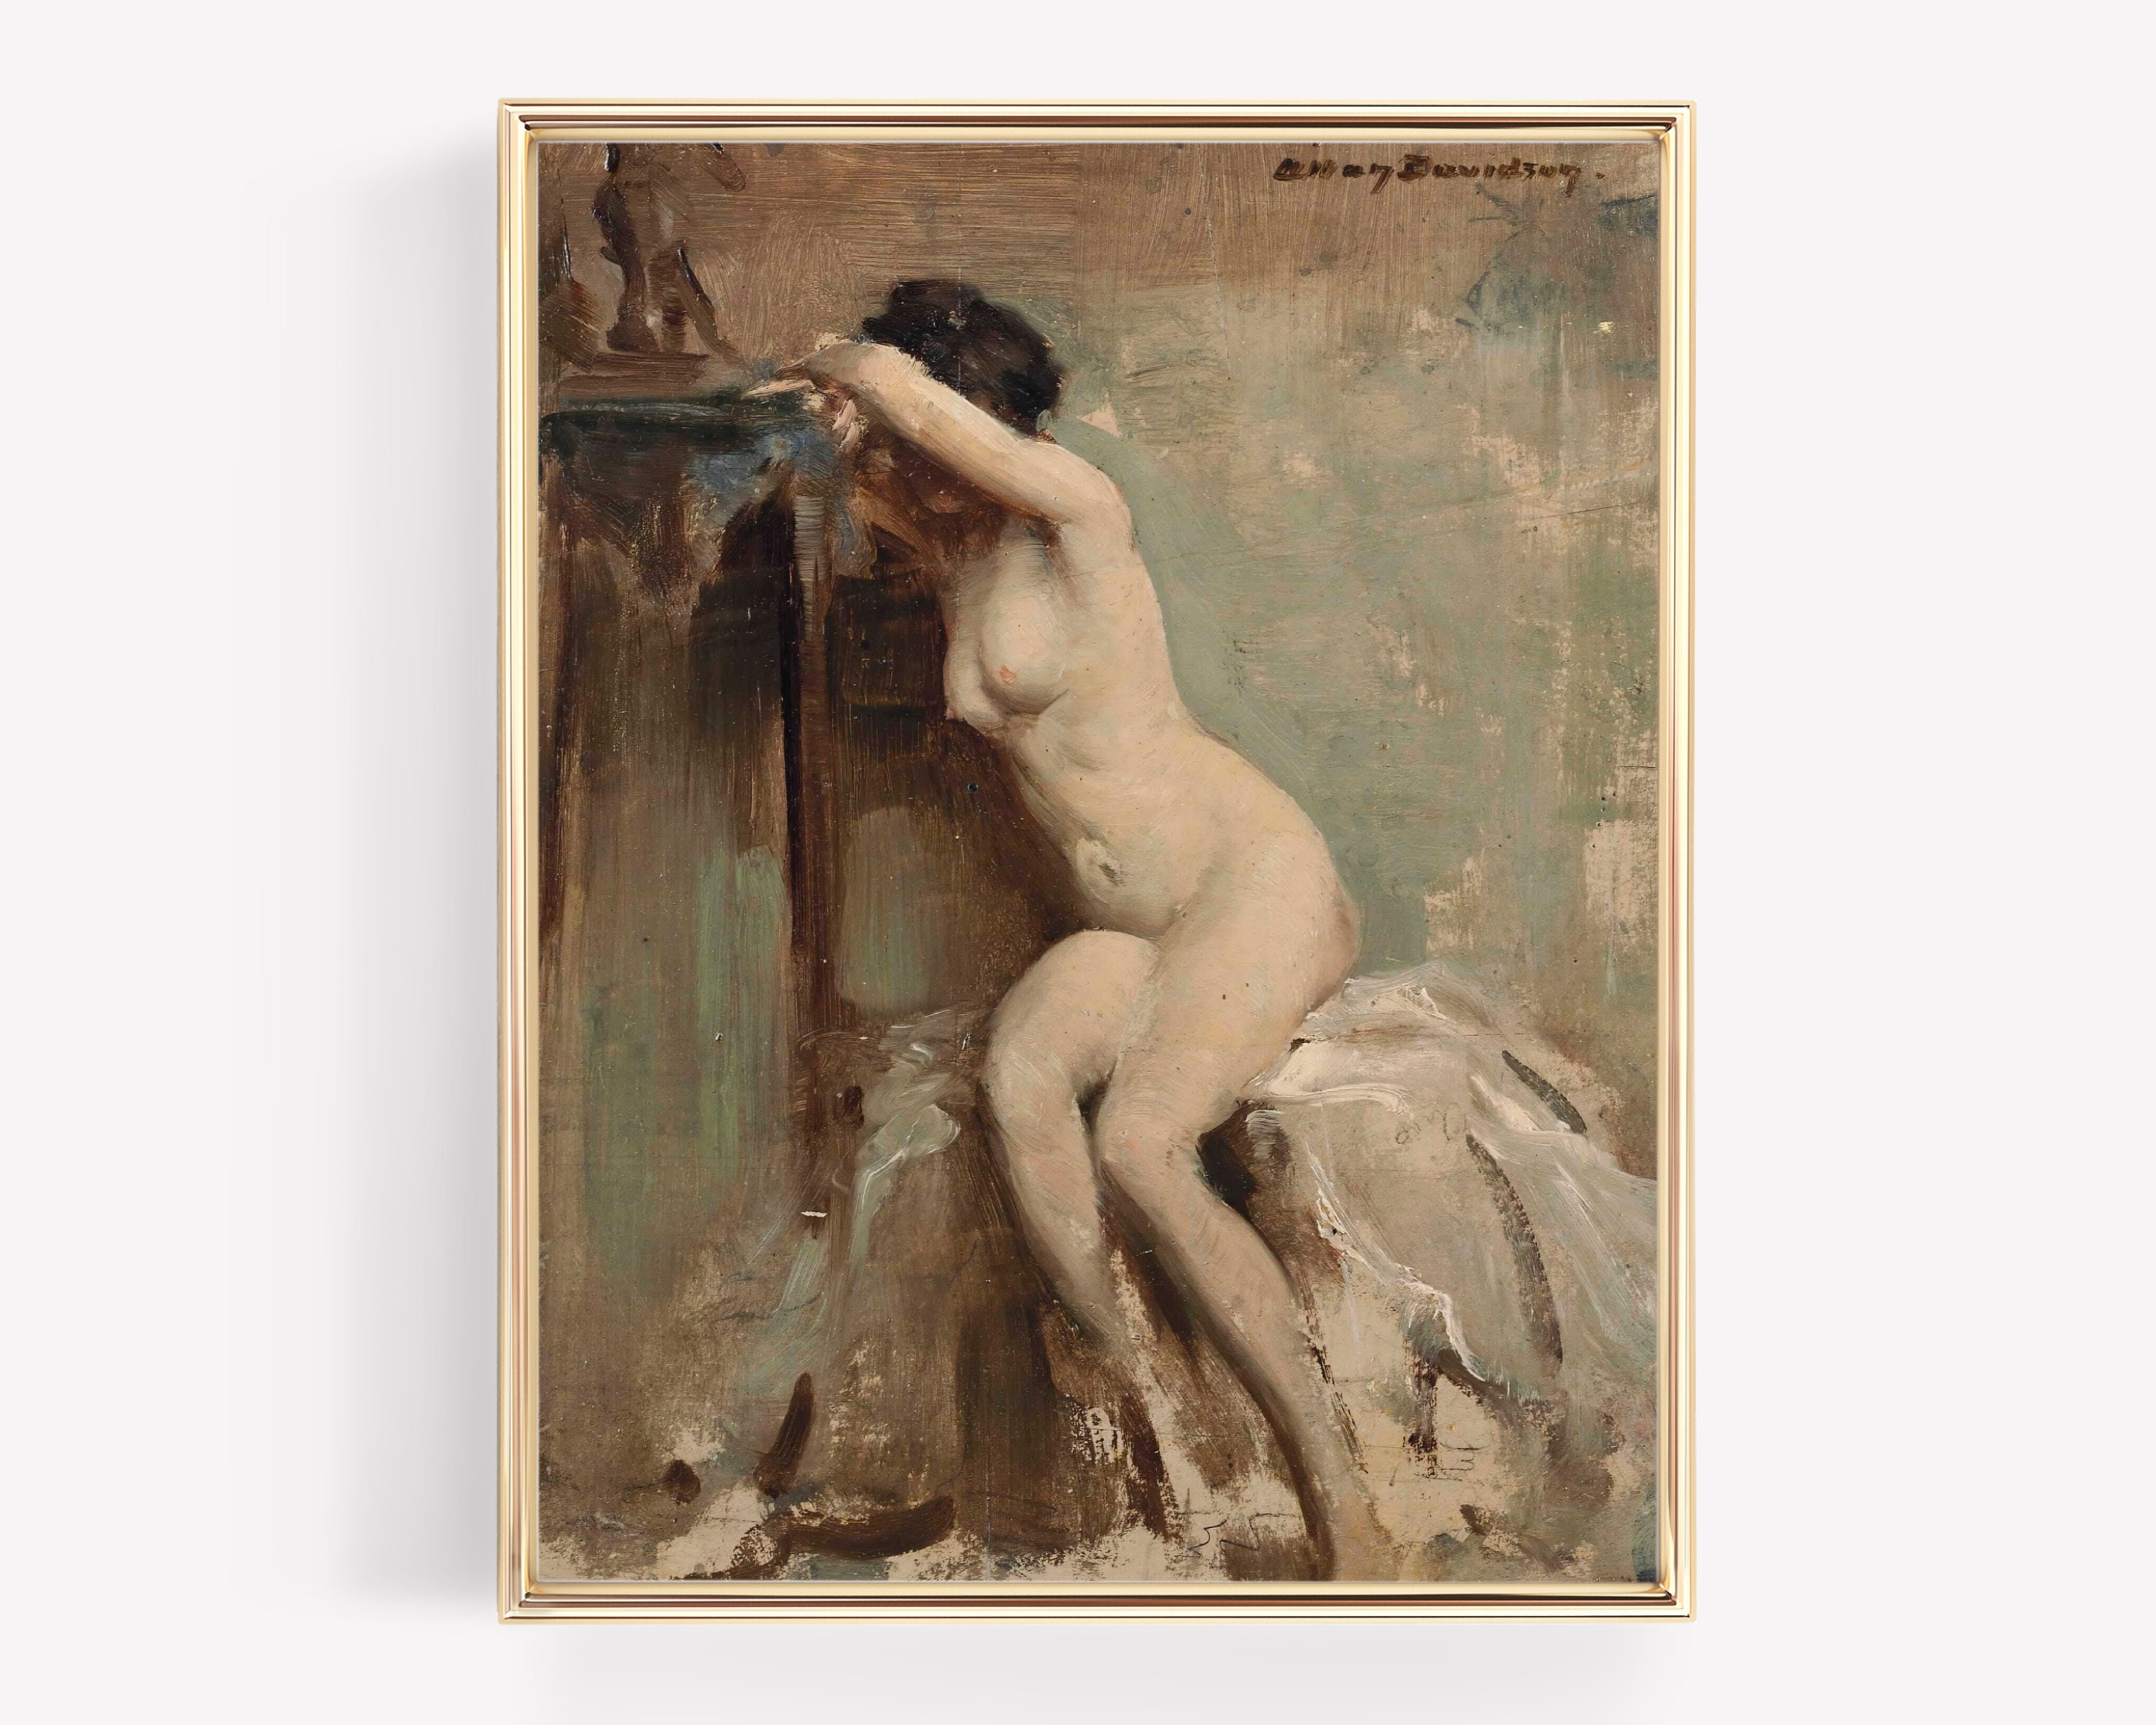 Vintage Art Nudes Erotica - Nude Woman Art Nude Art Print Victorian Erotic Antique Nude - Etsy Finland